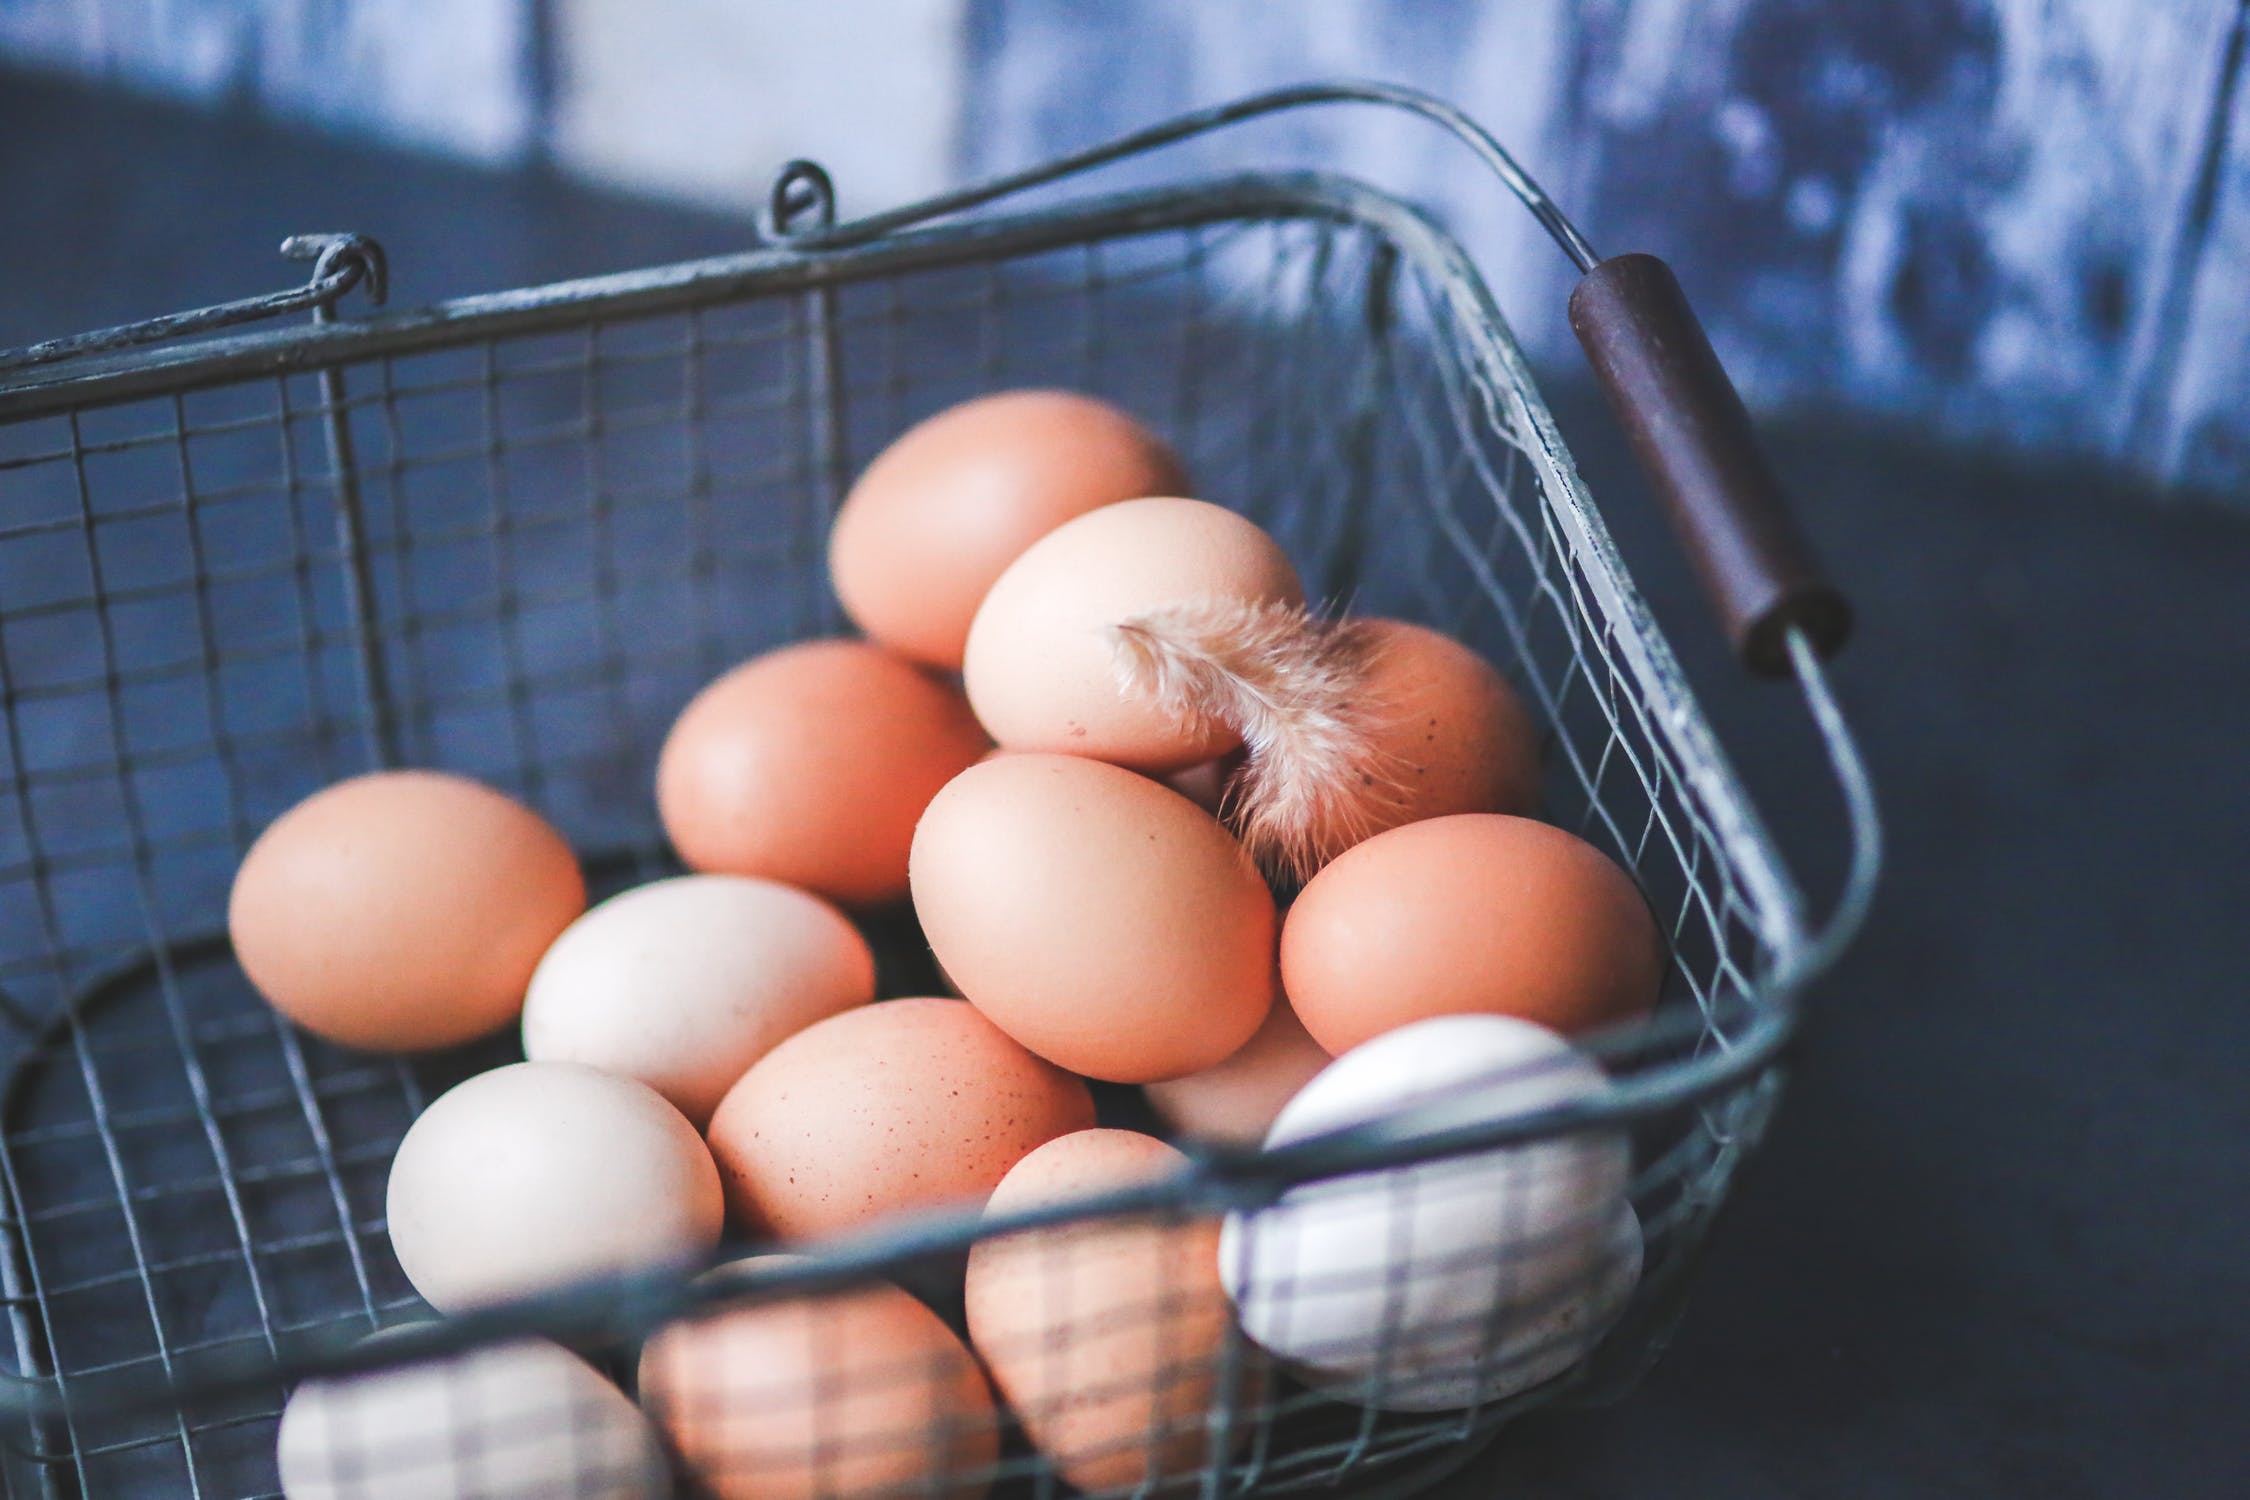 metal-easter-eggs-basket.jpg